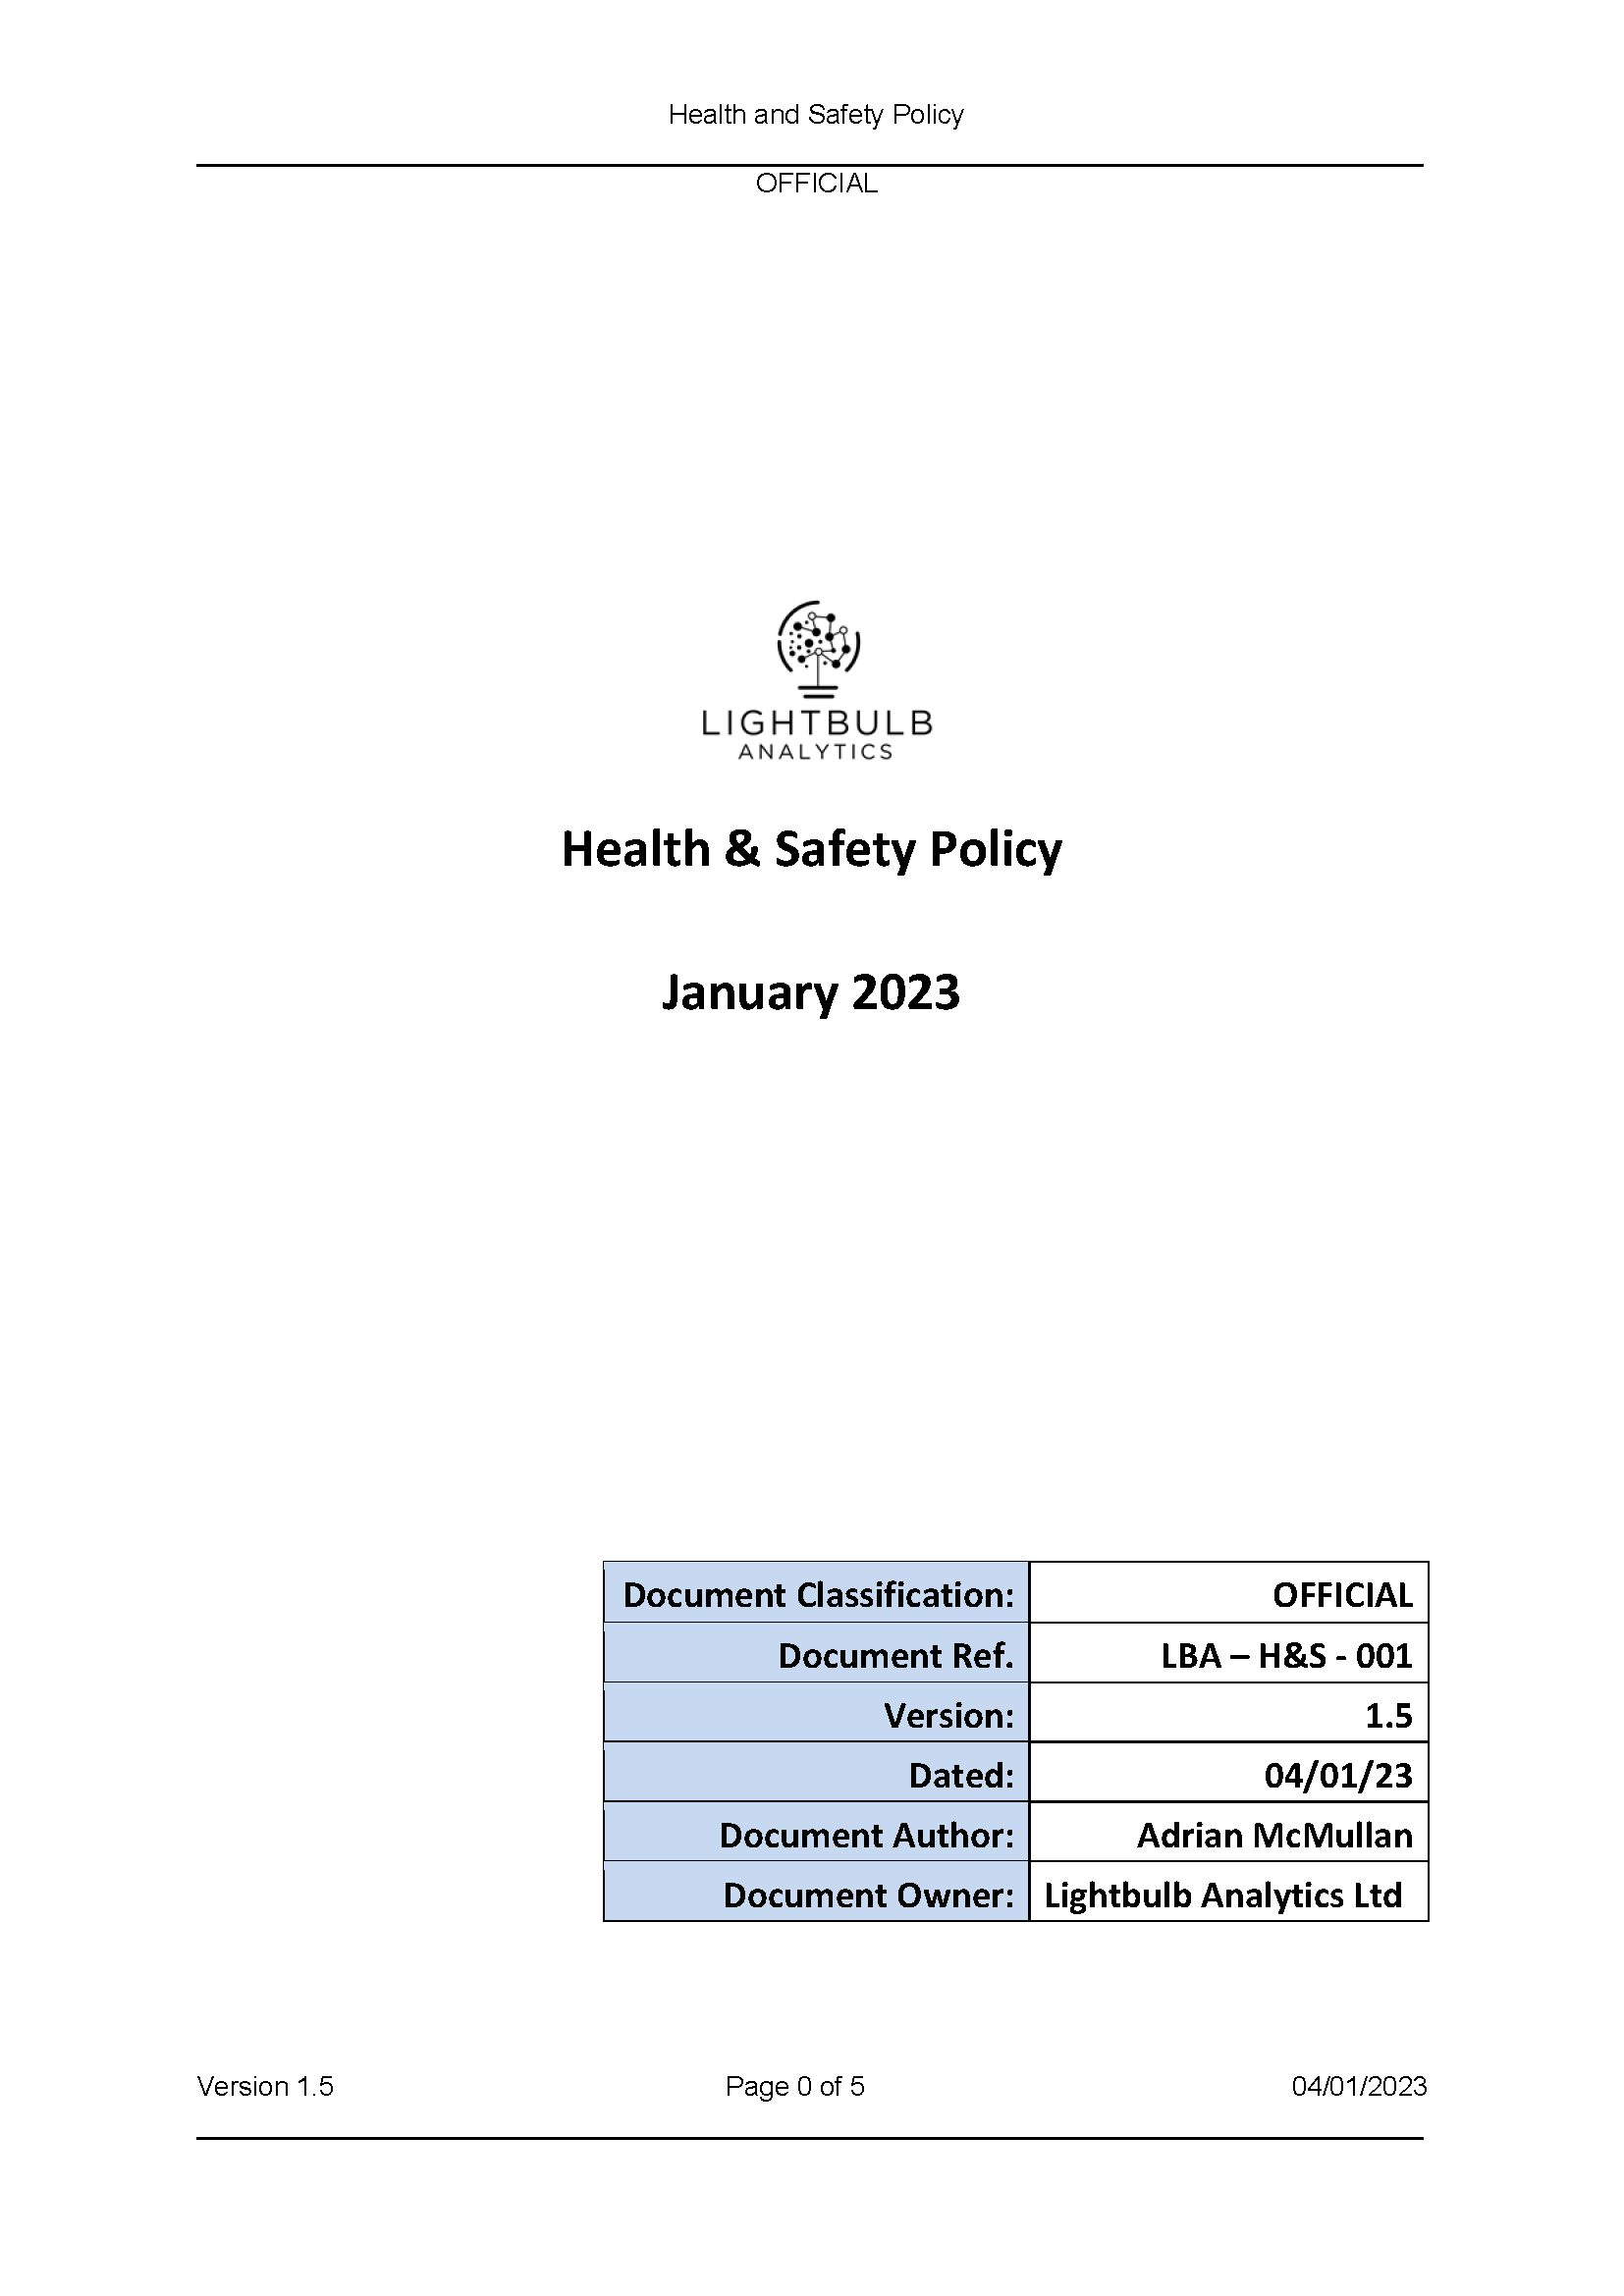 LBA Health & Safety policy v1.5